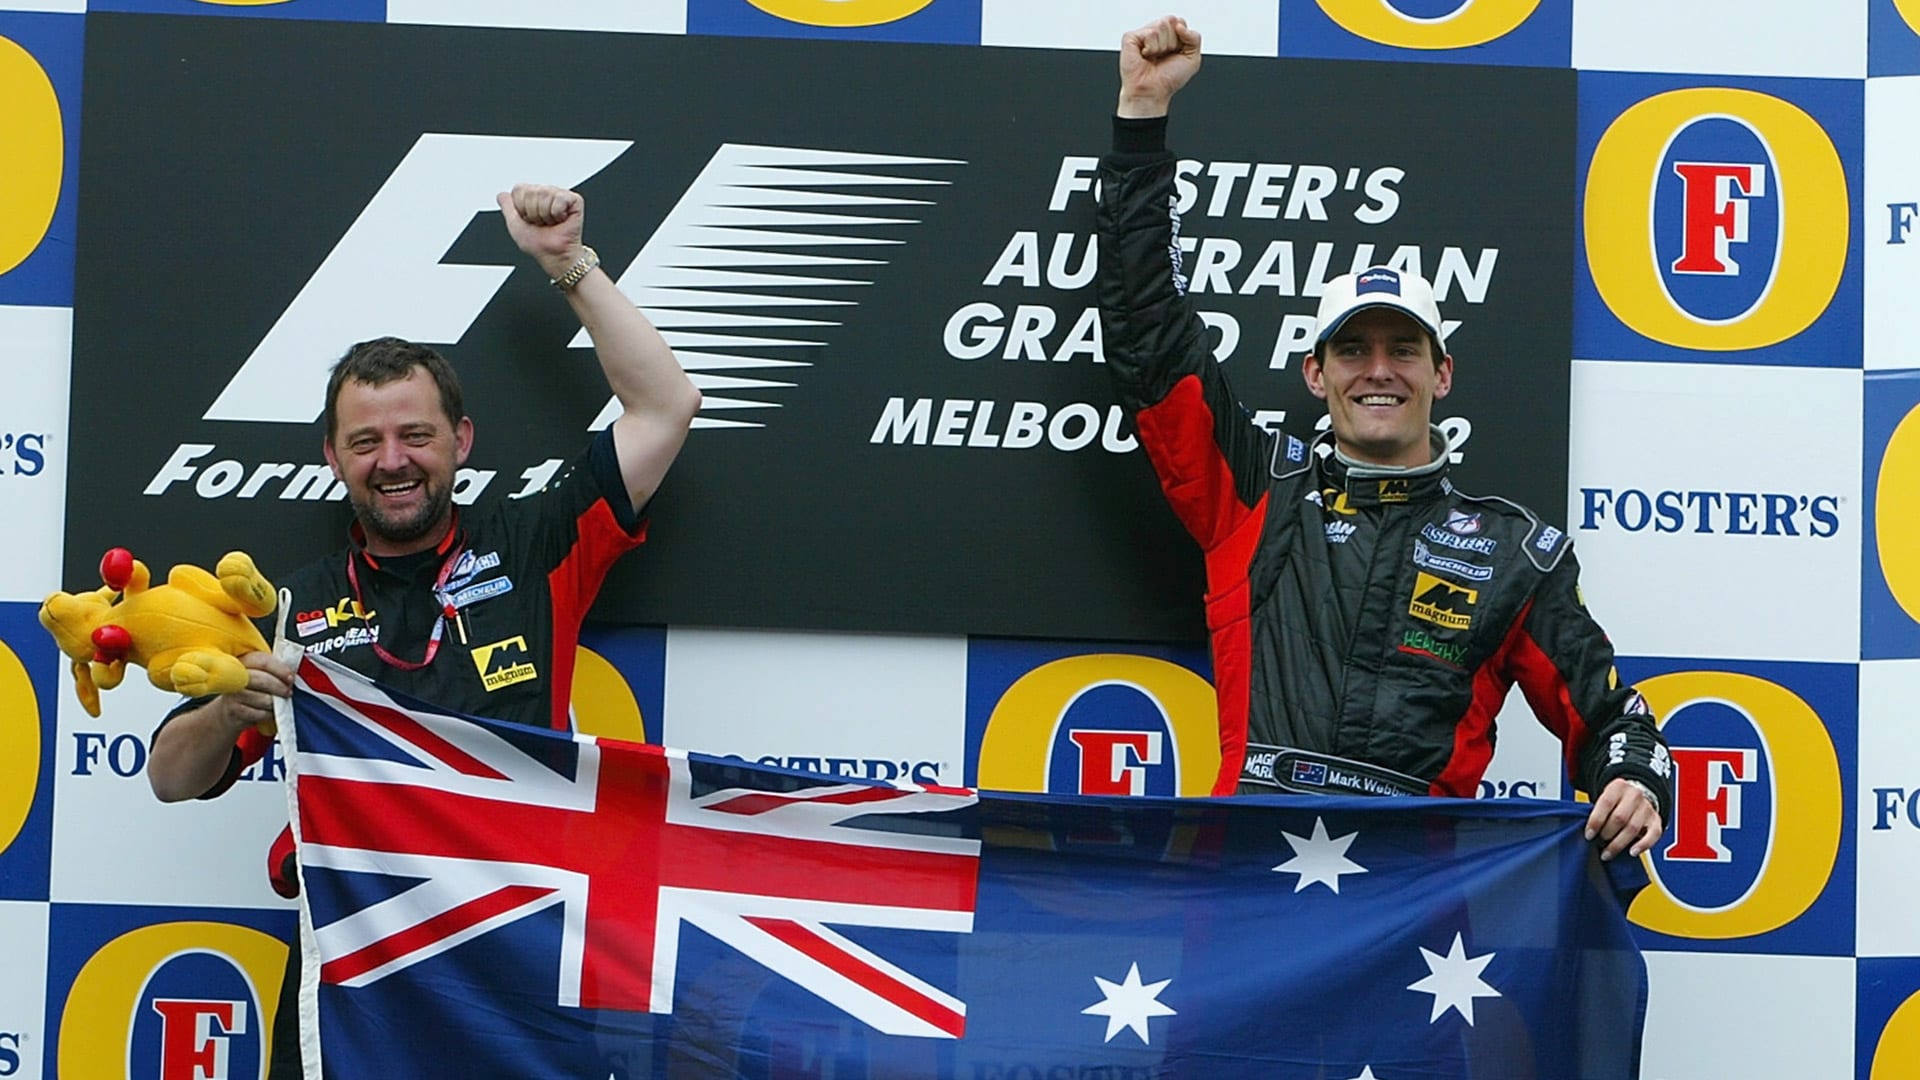 Mark Webber sur le podium en Australie, l'une des belles histoires de la Formule 1. L'Australien, à domicile, a su éviter les embuches d'une course à rebondissements pour se classer cinquième de la manche en 2002.